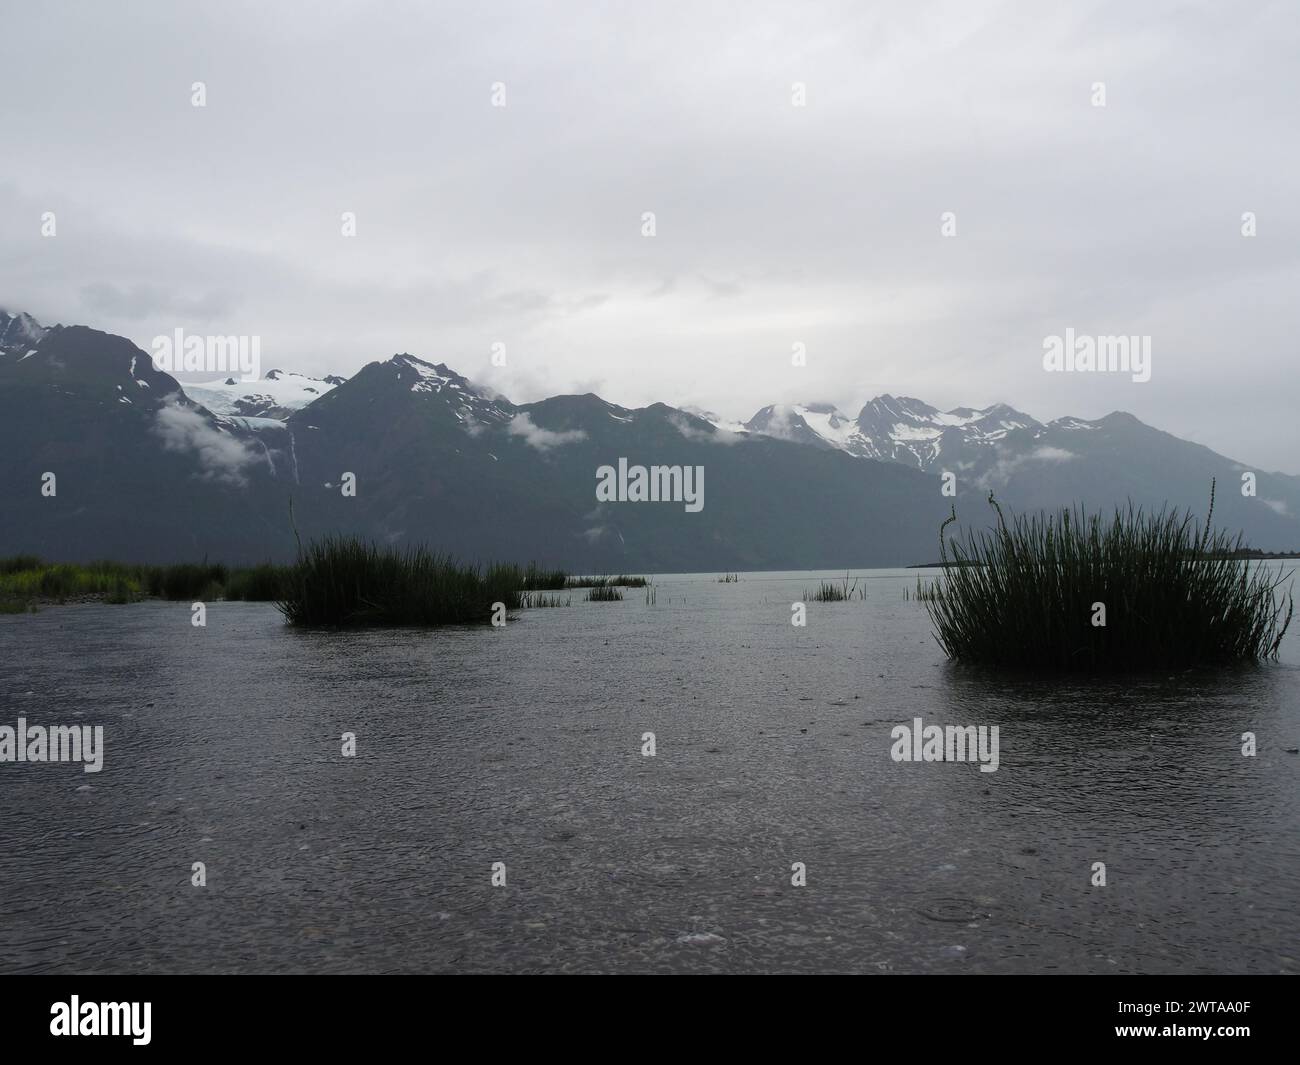 Haines, Alaska, con acque tranquille e piante acquatiche, sullo sfondo di maestose montagne innevate coperte di nebbia Foto Stock